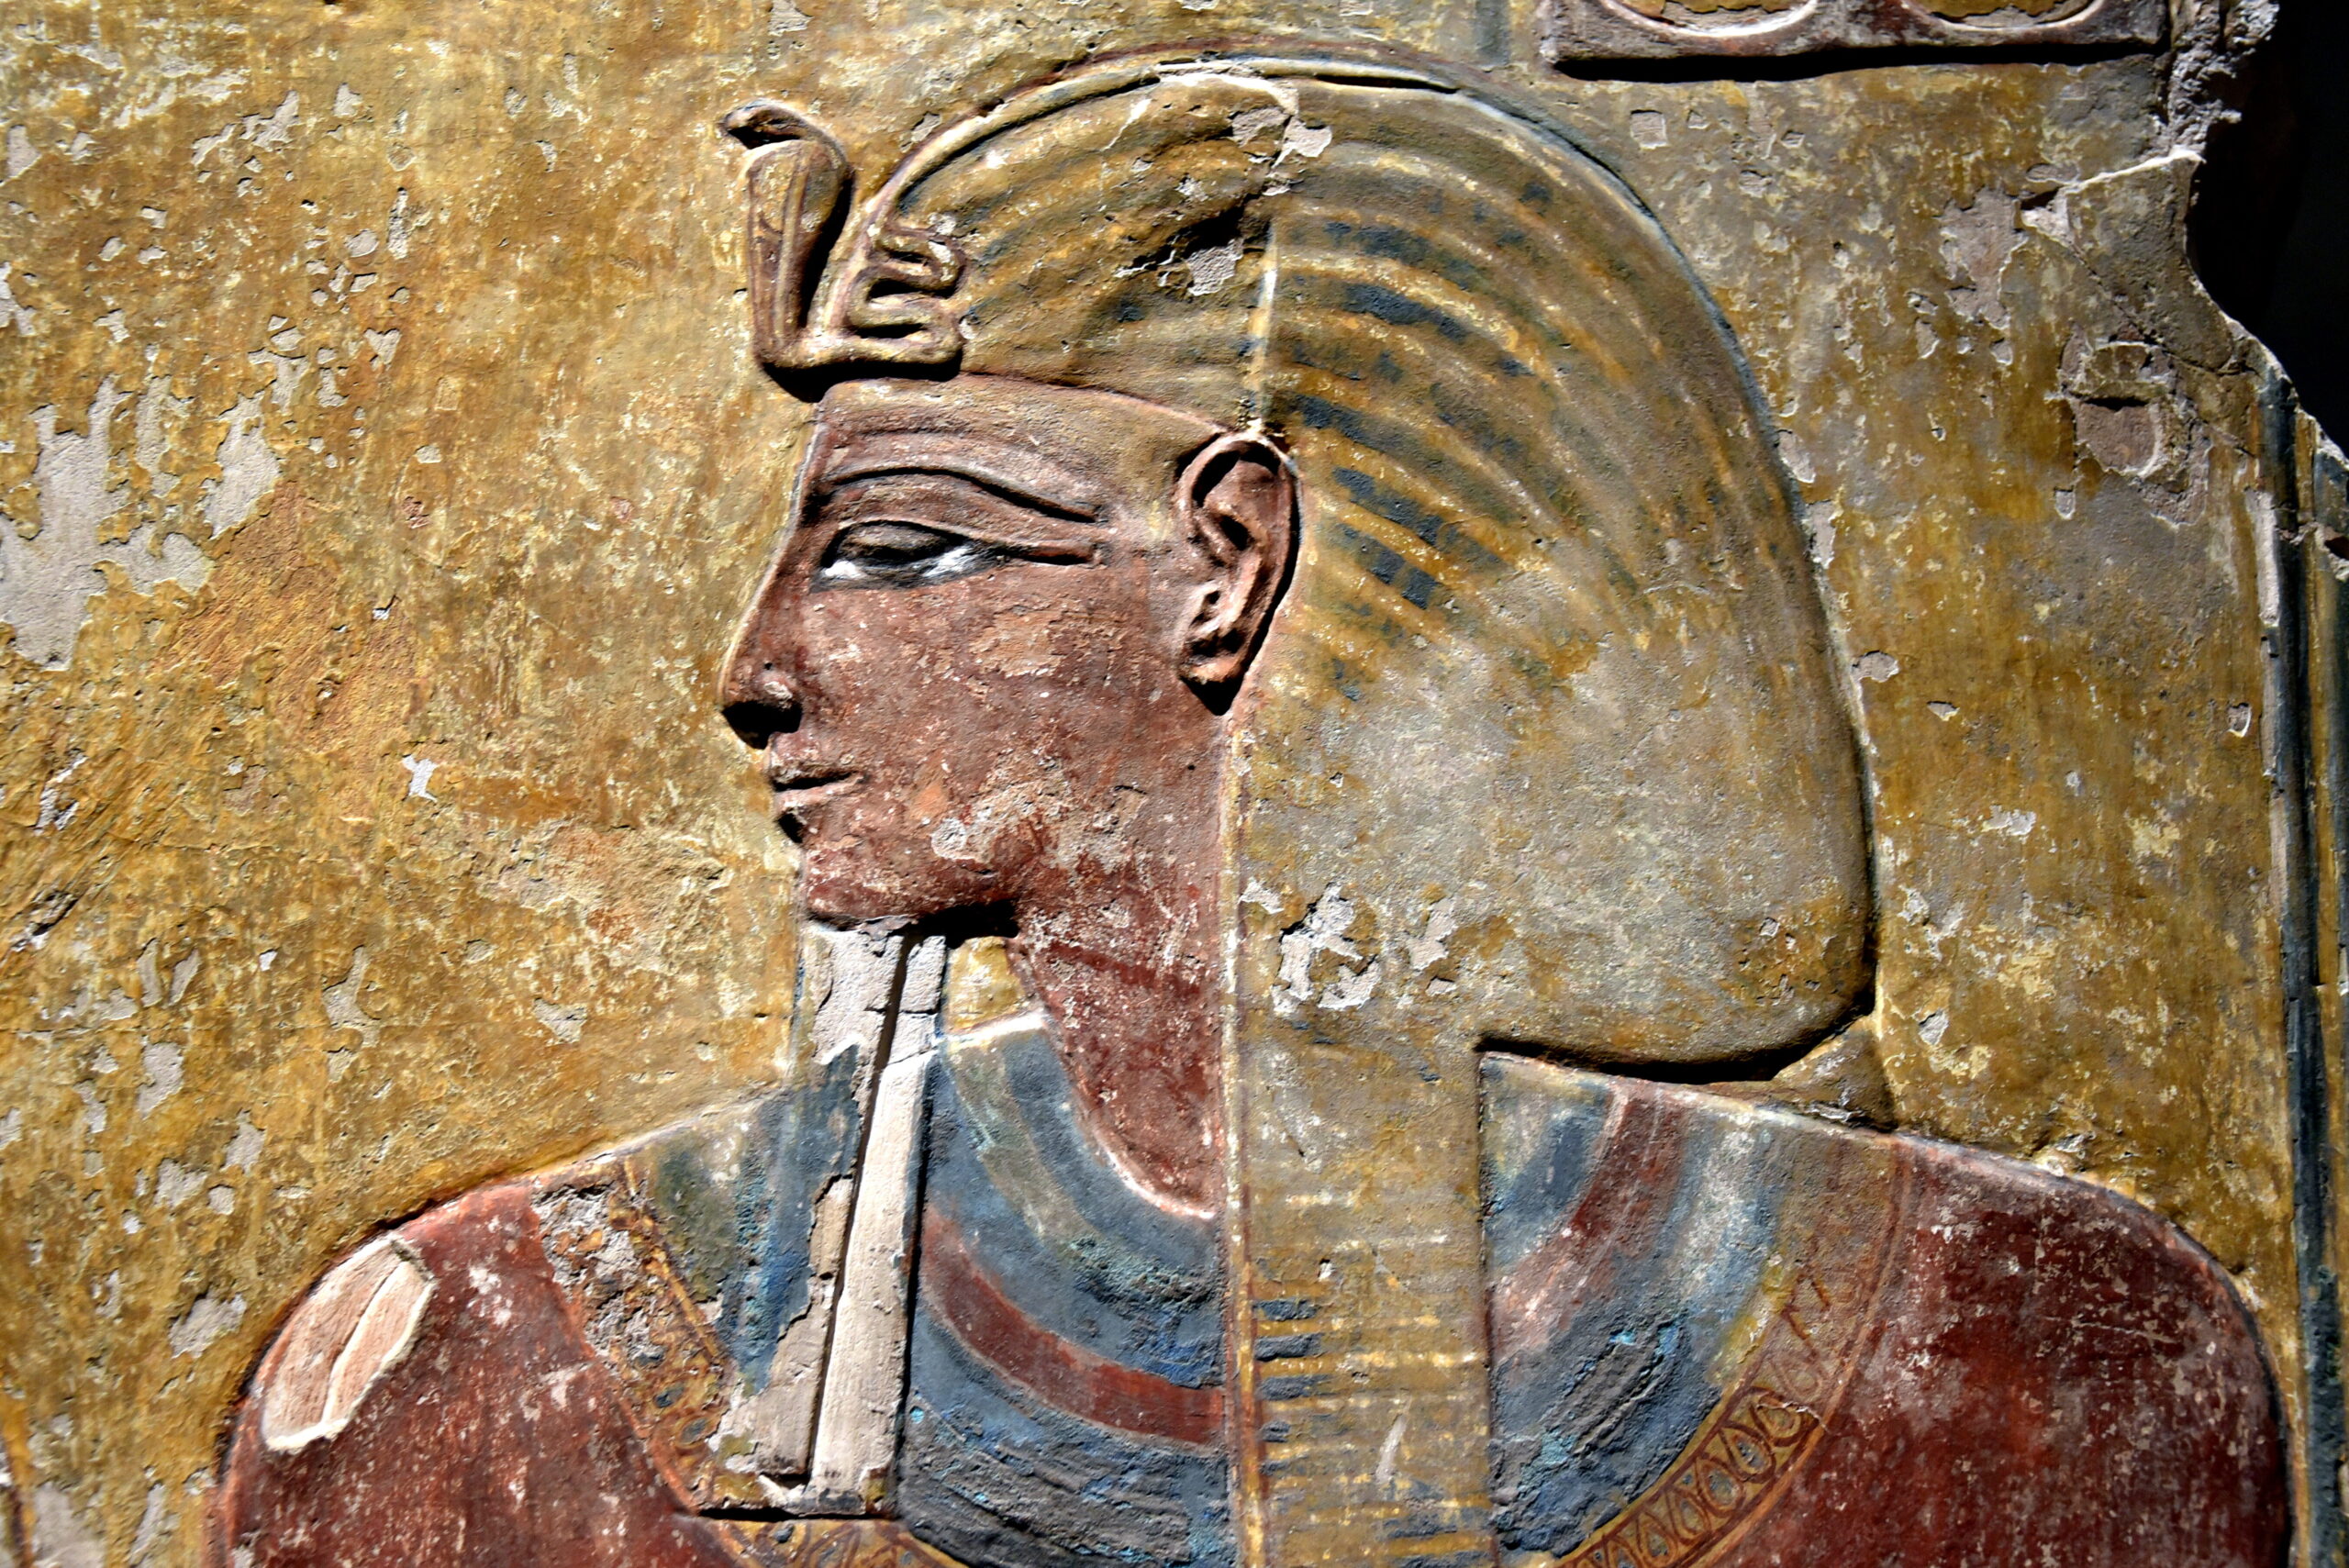 El padre de Ramsés II: Seti I, el poderoso faraón de Egipto.